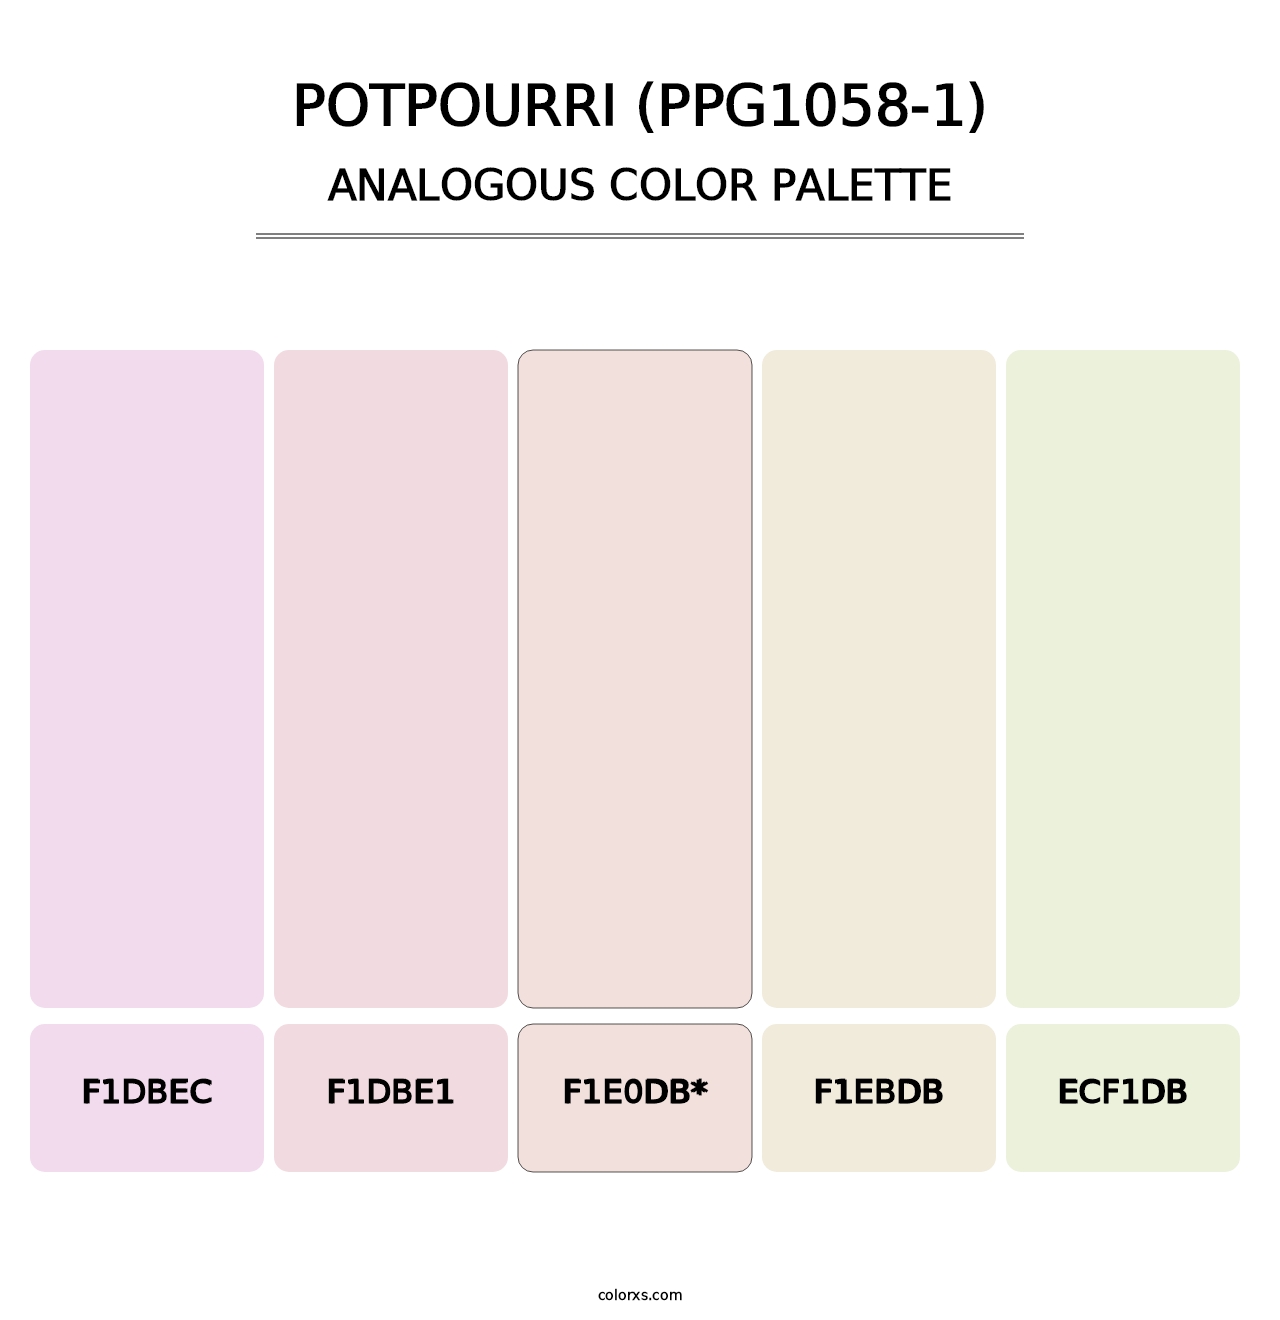 Potpourri (PPG1058-1) - Analogous Color Palette